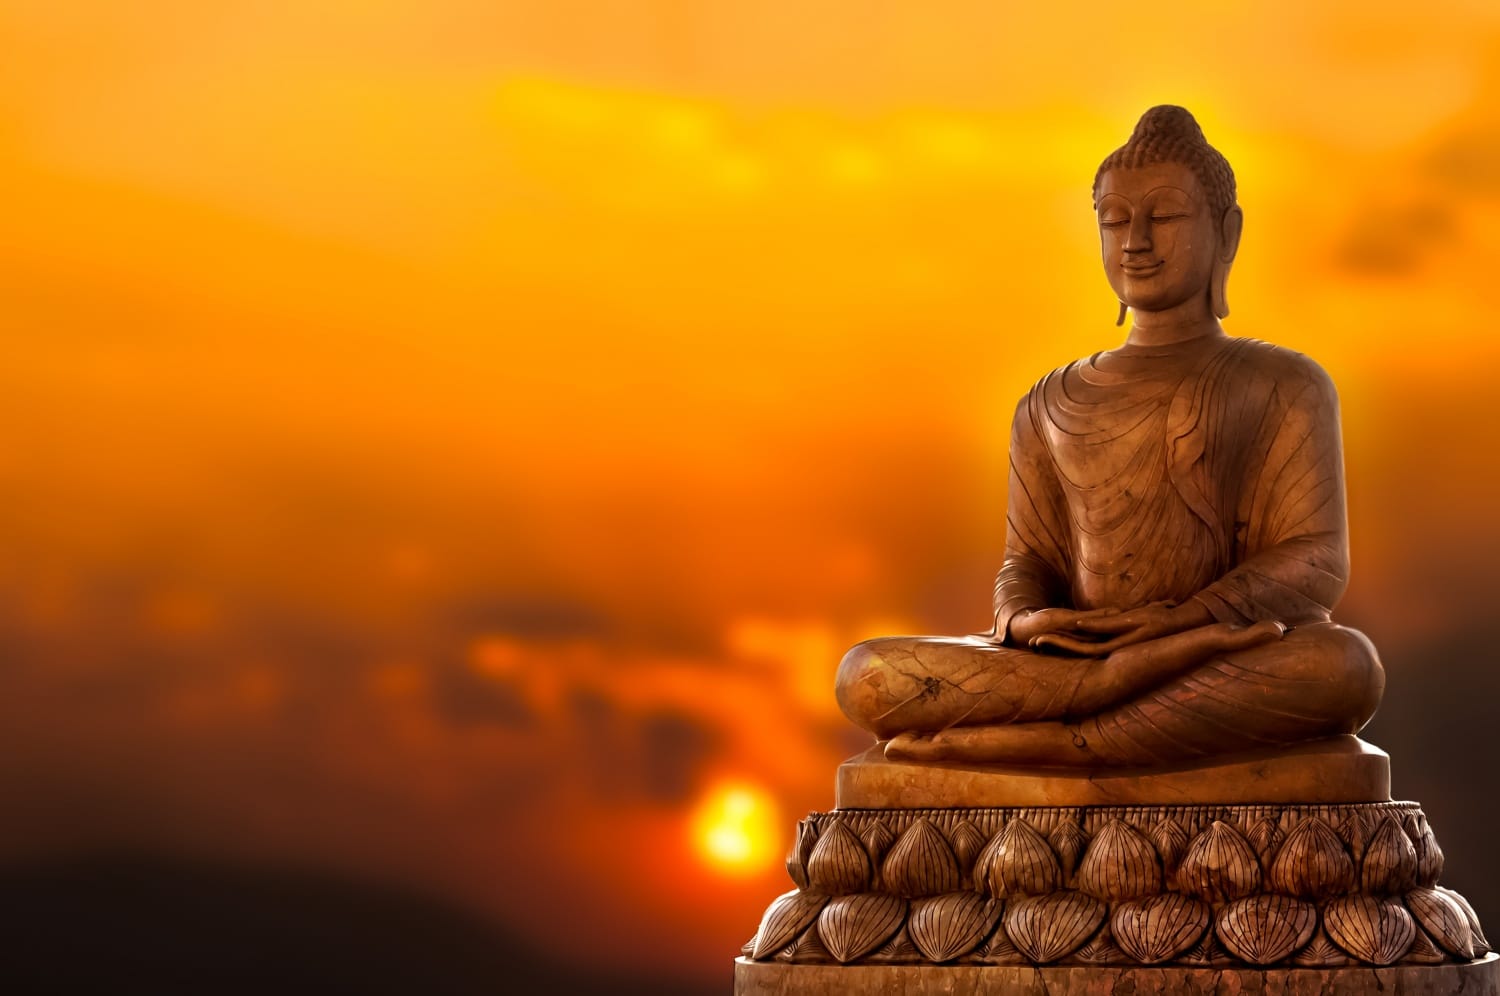 Hogyan használhatod életenergiáidat tudatosan Buddha tanításai szerint?